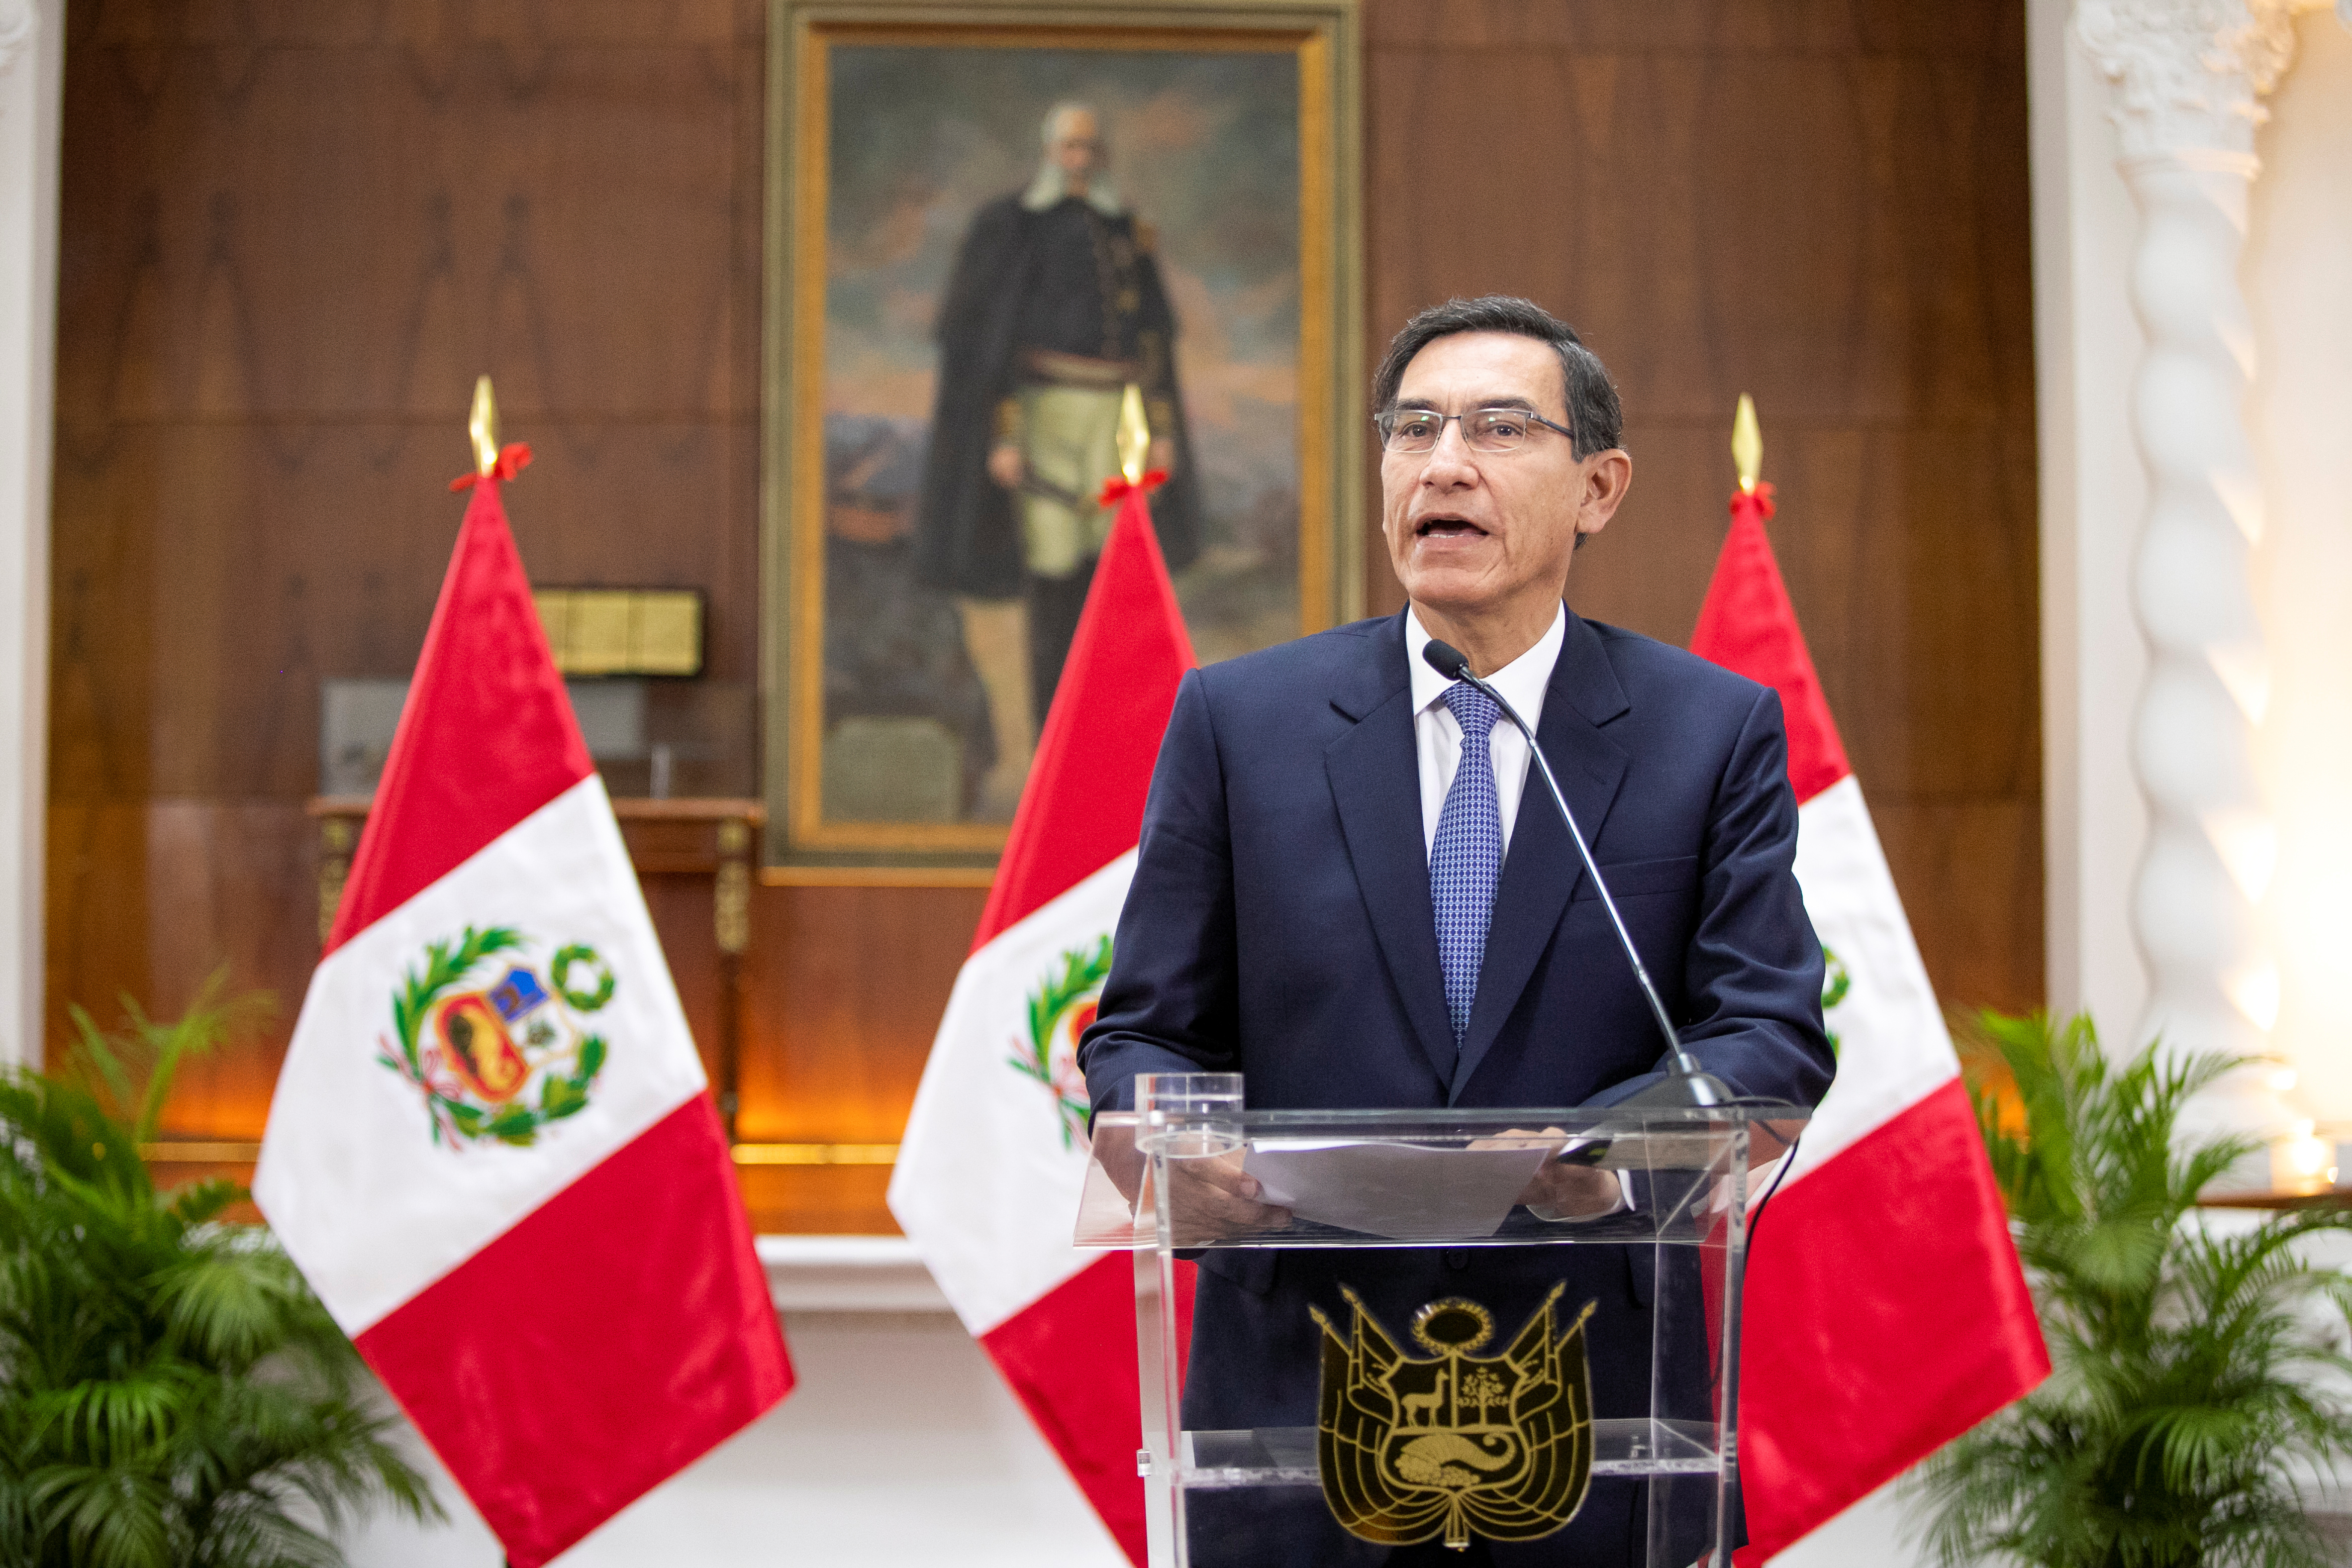 Comenzó el juicio político contra el presidente Martín Vizcarra en el Congreso de Perú